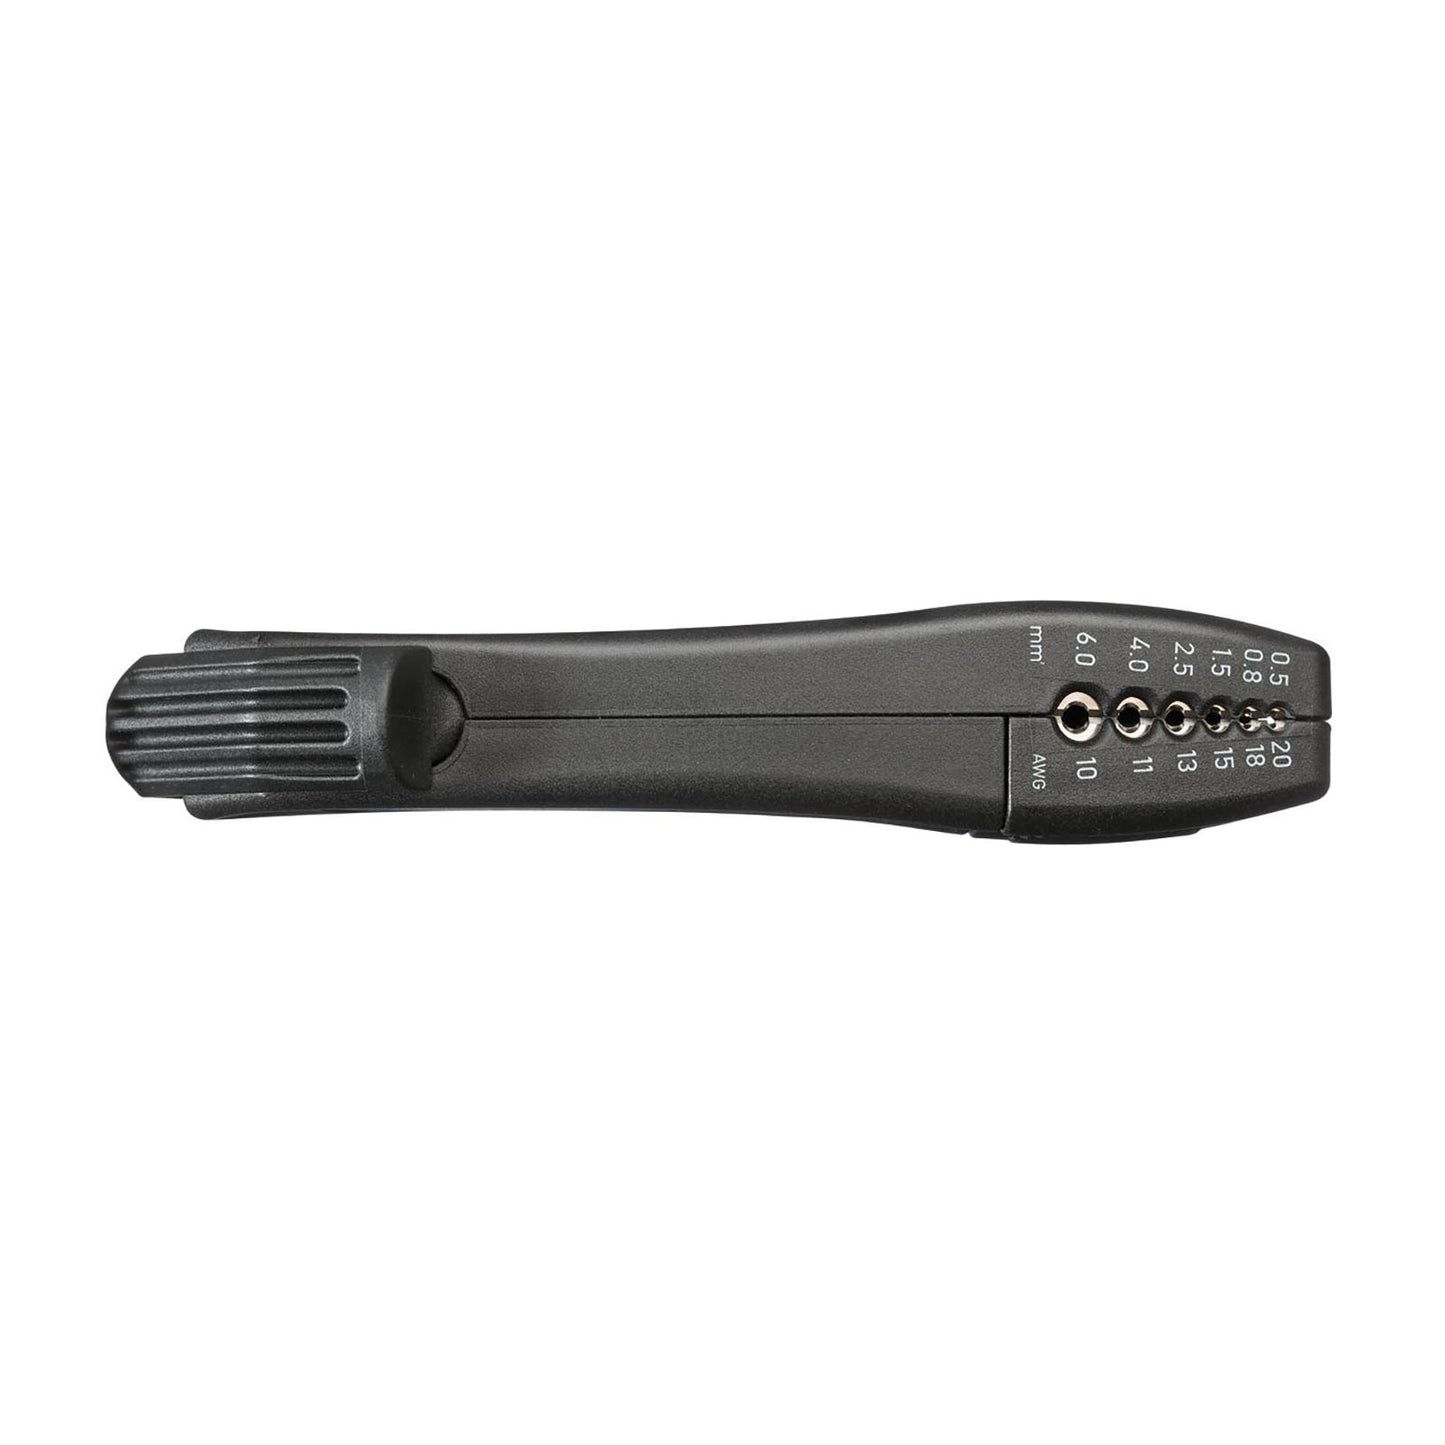 GEDORE 4529 Couteau utilitaire pour câble (2955393)